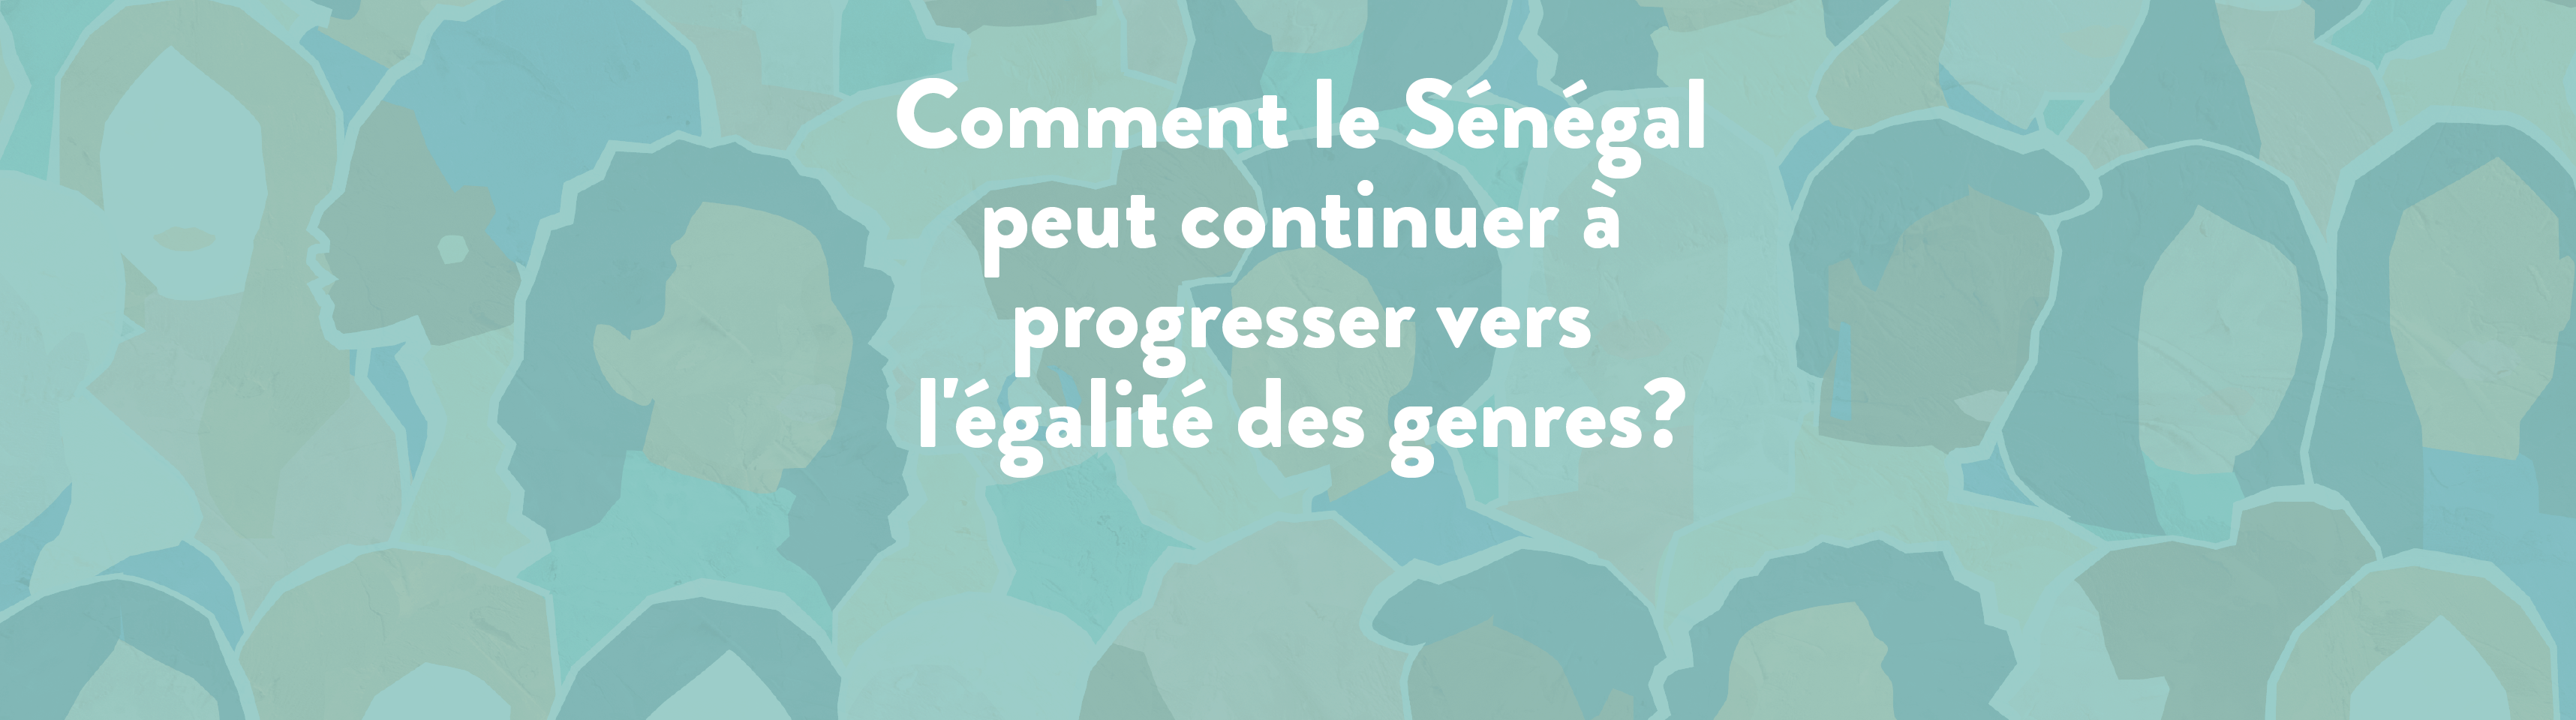 Comment le Sénégal peut continuer à progresser vers l’égalité des genres? 